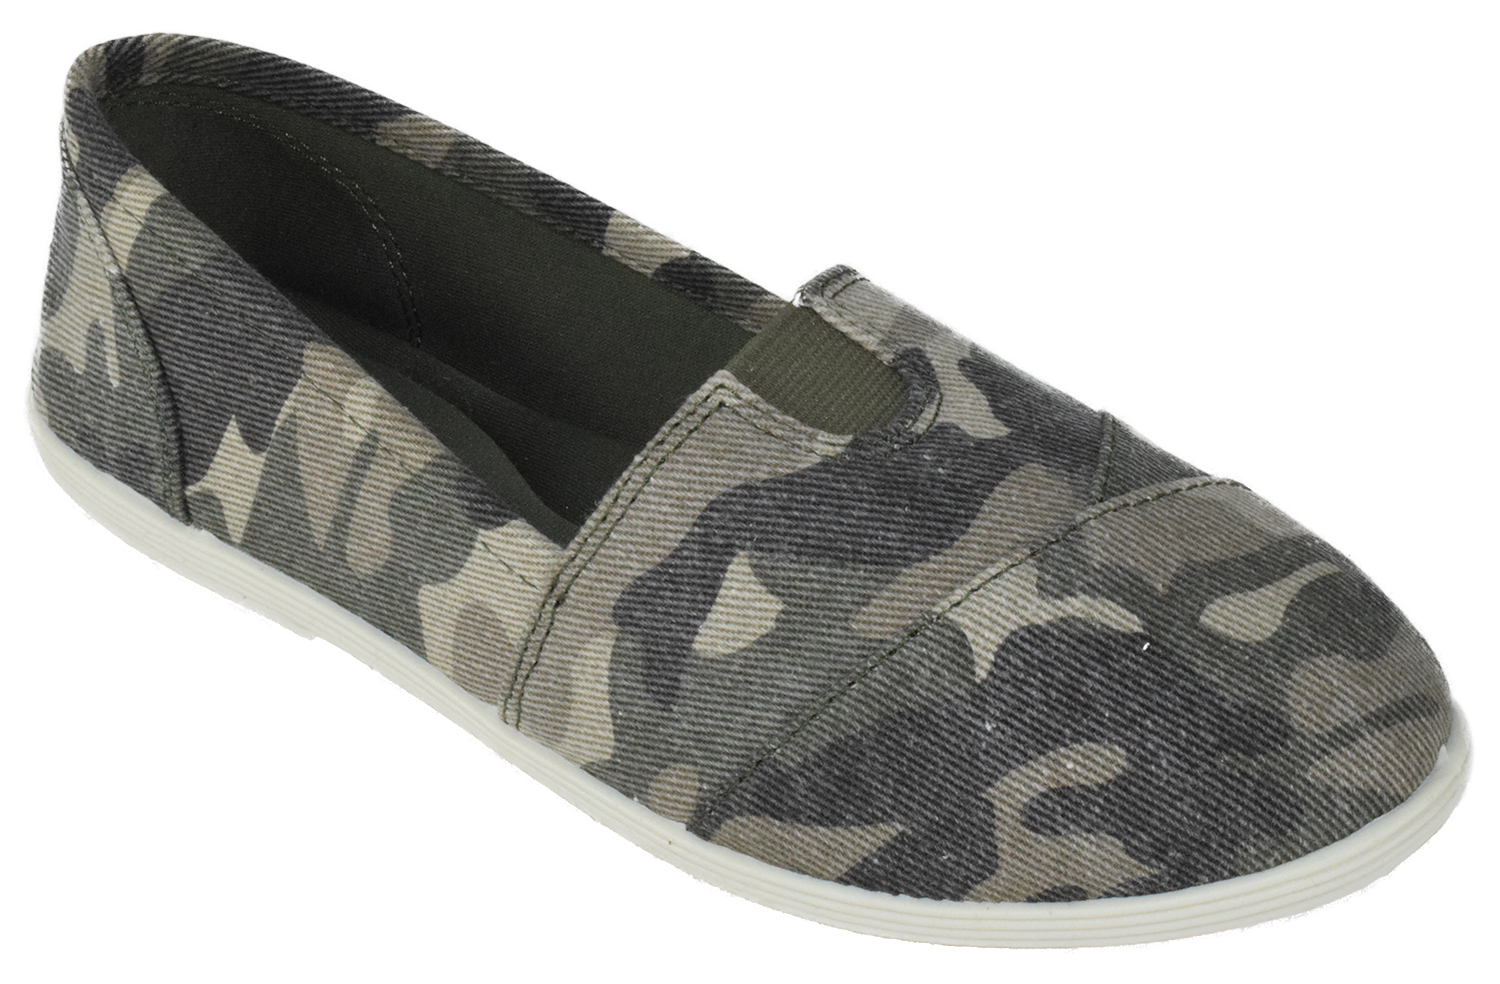 Soda Flat Women Shoes Linen Canvas Slip On Loafers Memory Foam Gel Insoles OBJI-S Camouflage Khaki Green 6.5 - image 1 of 2